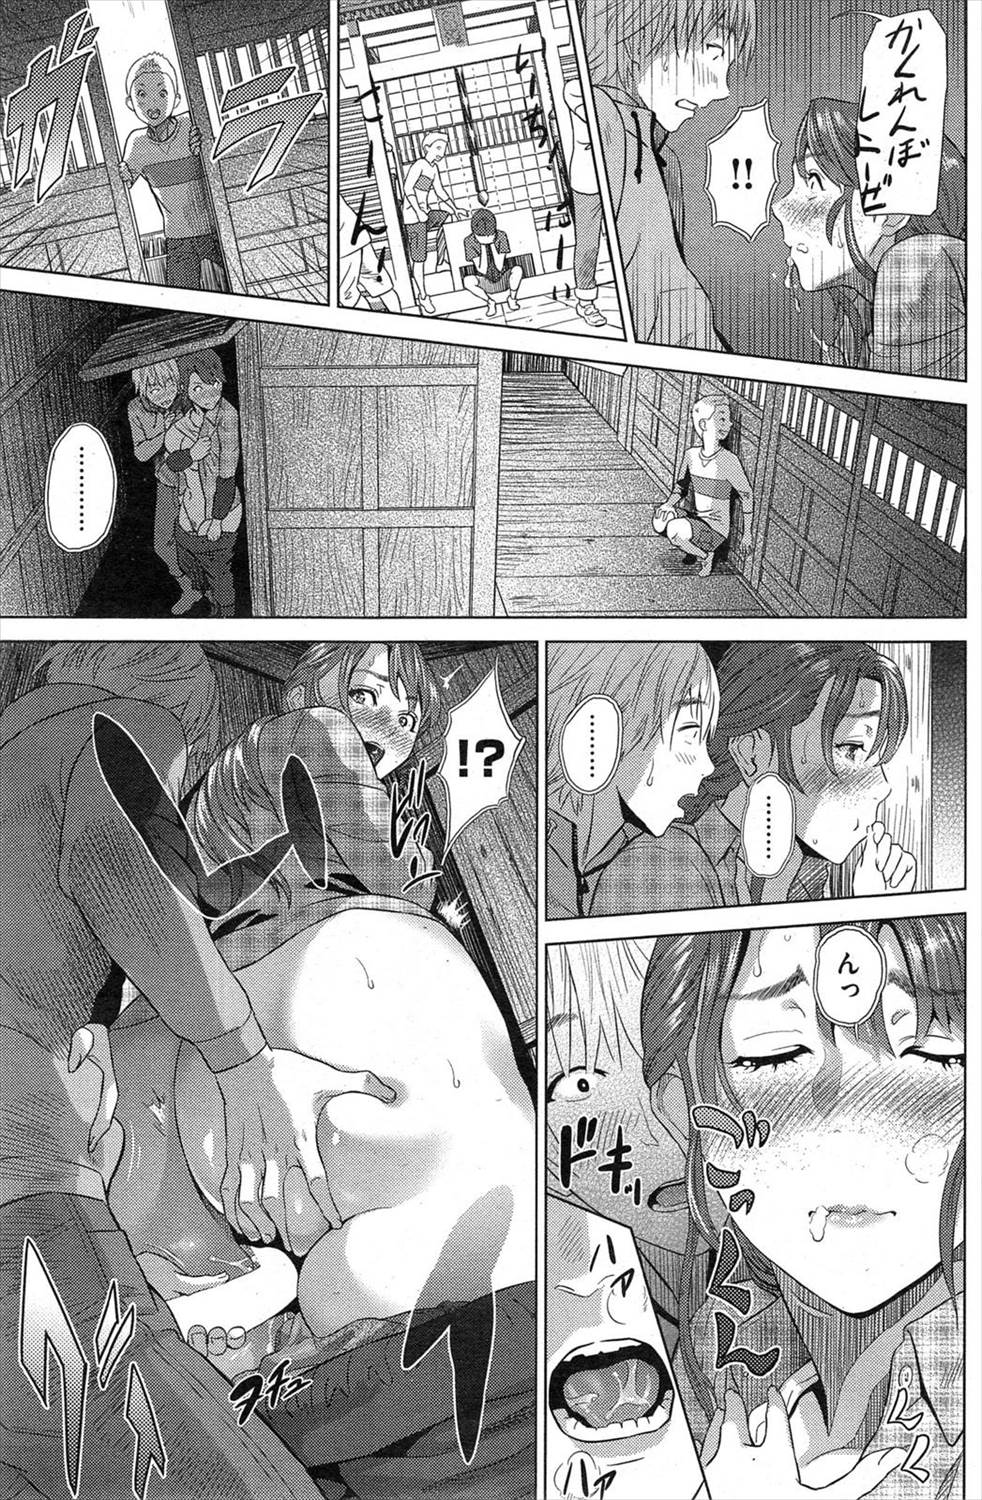 【エロ漫画】神社のお社の中で親戚のオバサンと押し倒す形になって手マンされトロマンに生挿入中出しされるｗｗｗｗ